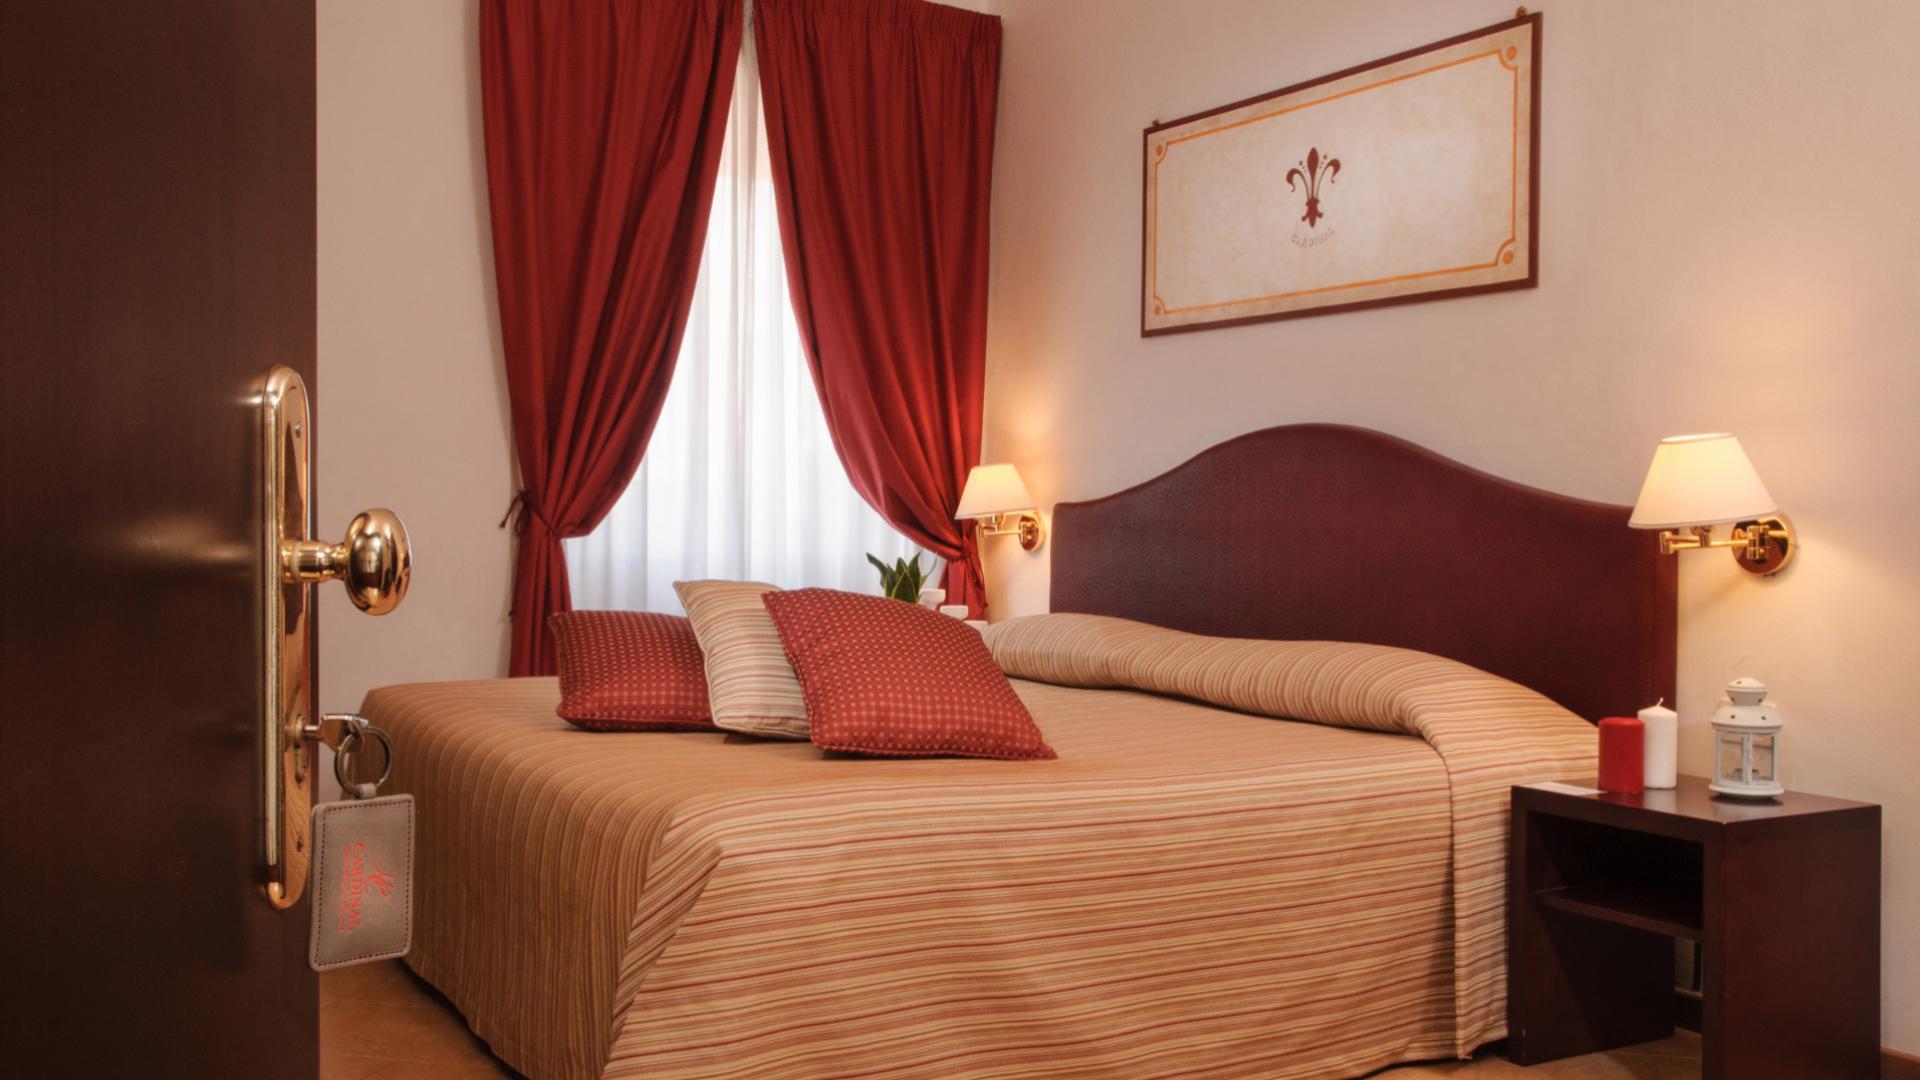 Camera da letto accogliente con letto matrimoniale, cuscini rossi e tenda.